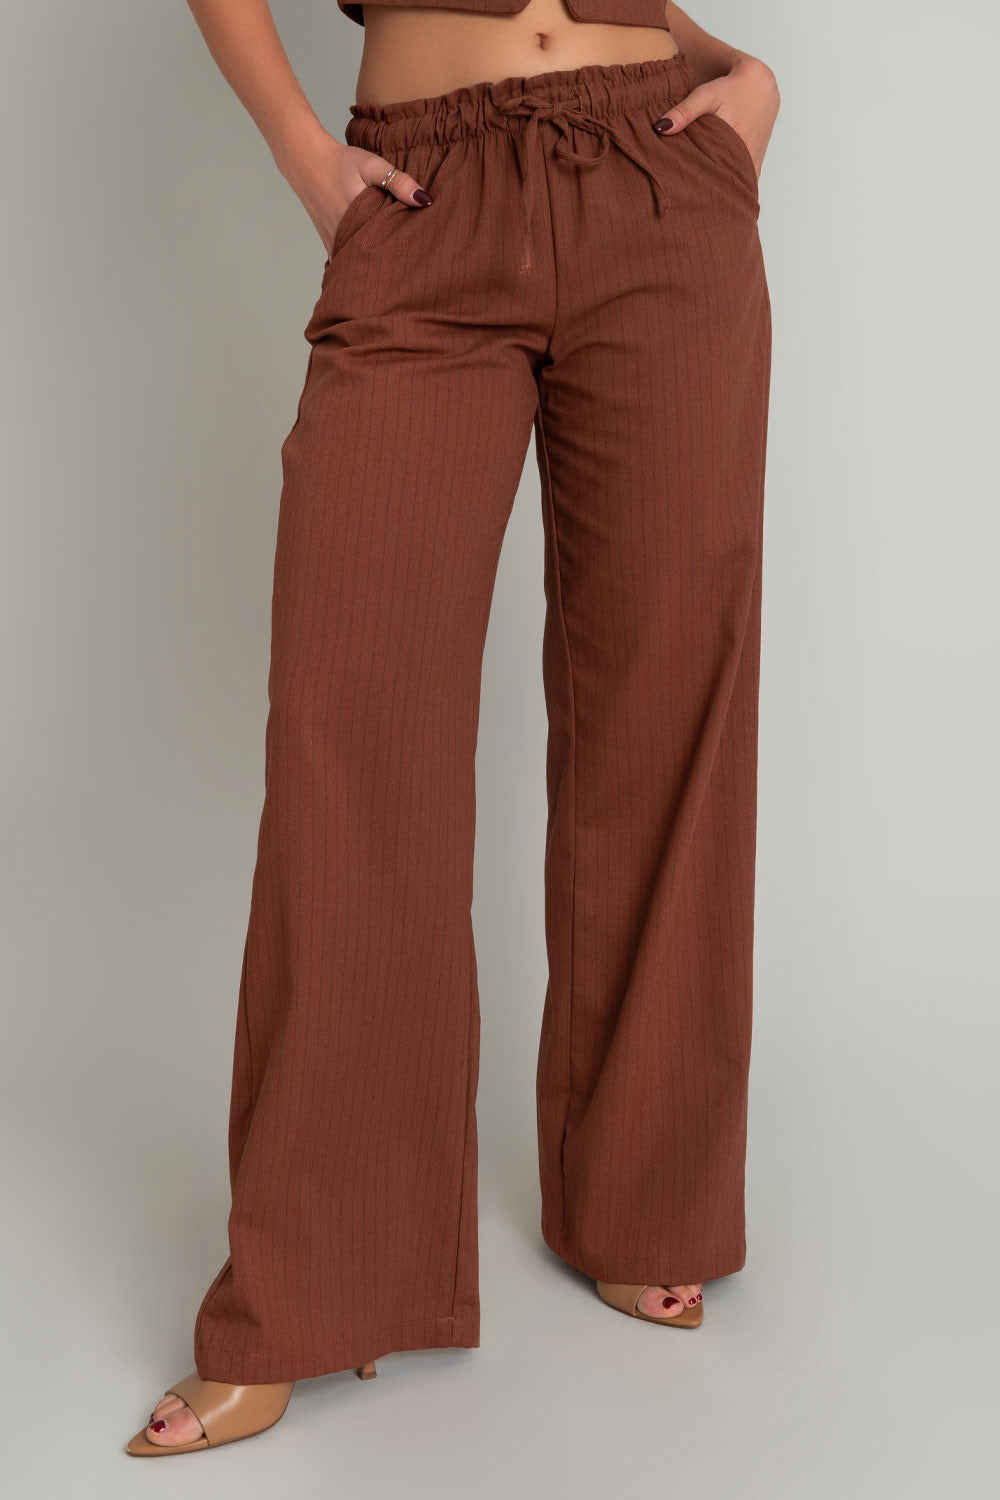 Pantalón de estampado rayas, fit wide leg, bolsillos delanteros y trasero de parche, cintura alta con pretina elástica y jareta frontal ajustable.